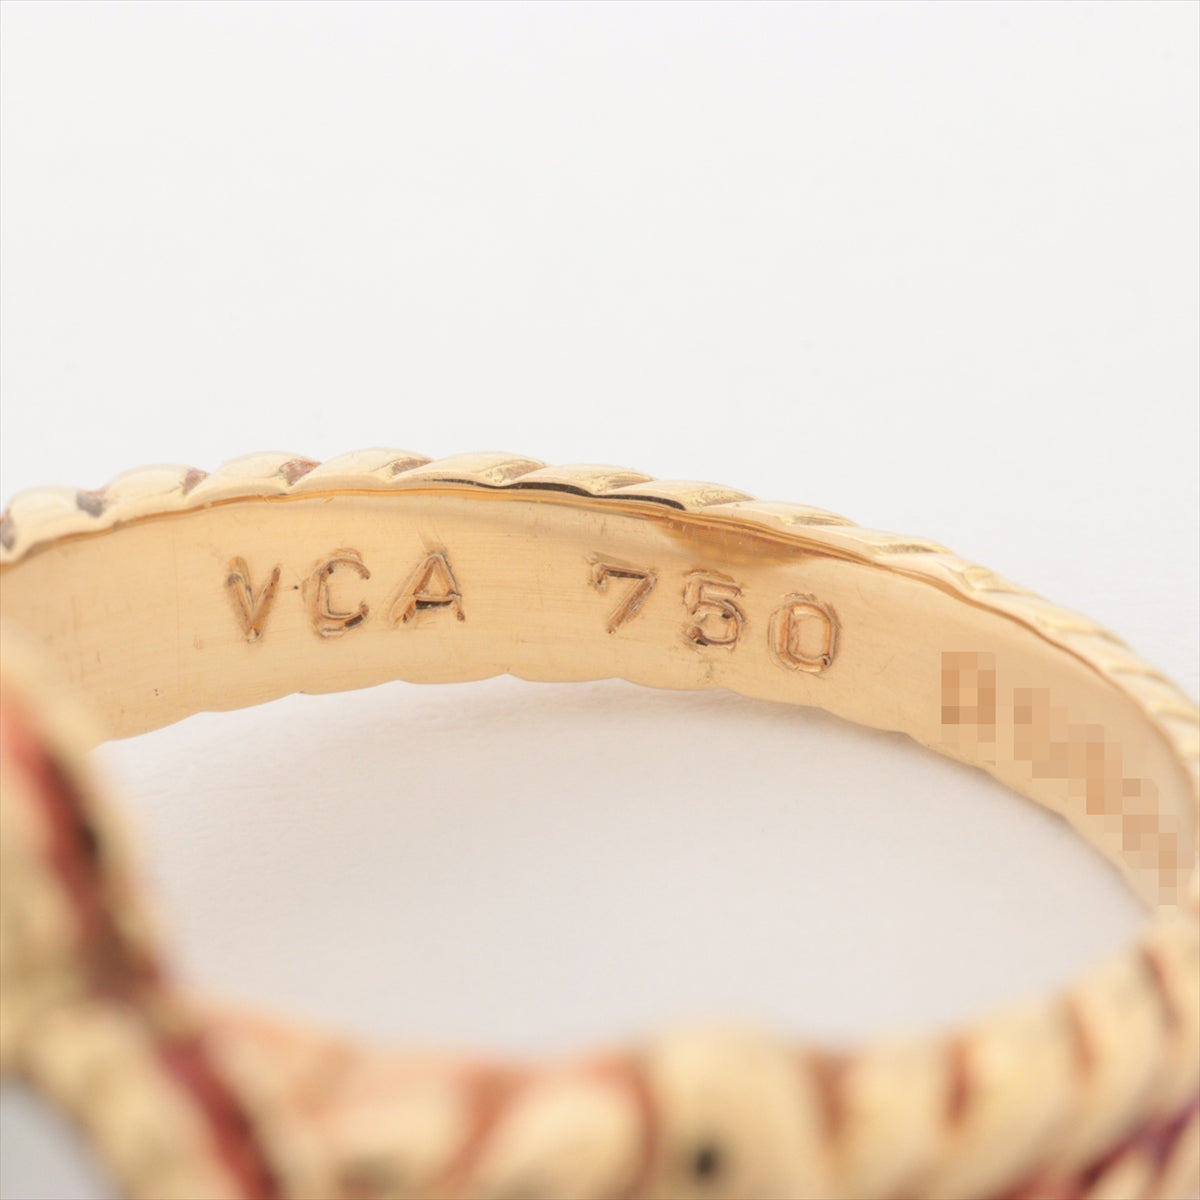 ヴァンクリーフ&アーペル ヴィンテージアルハンブラ シェル ダイヤ リング 750(YG) 8.2g